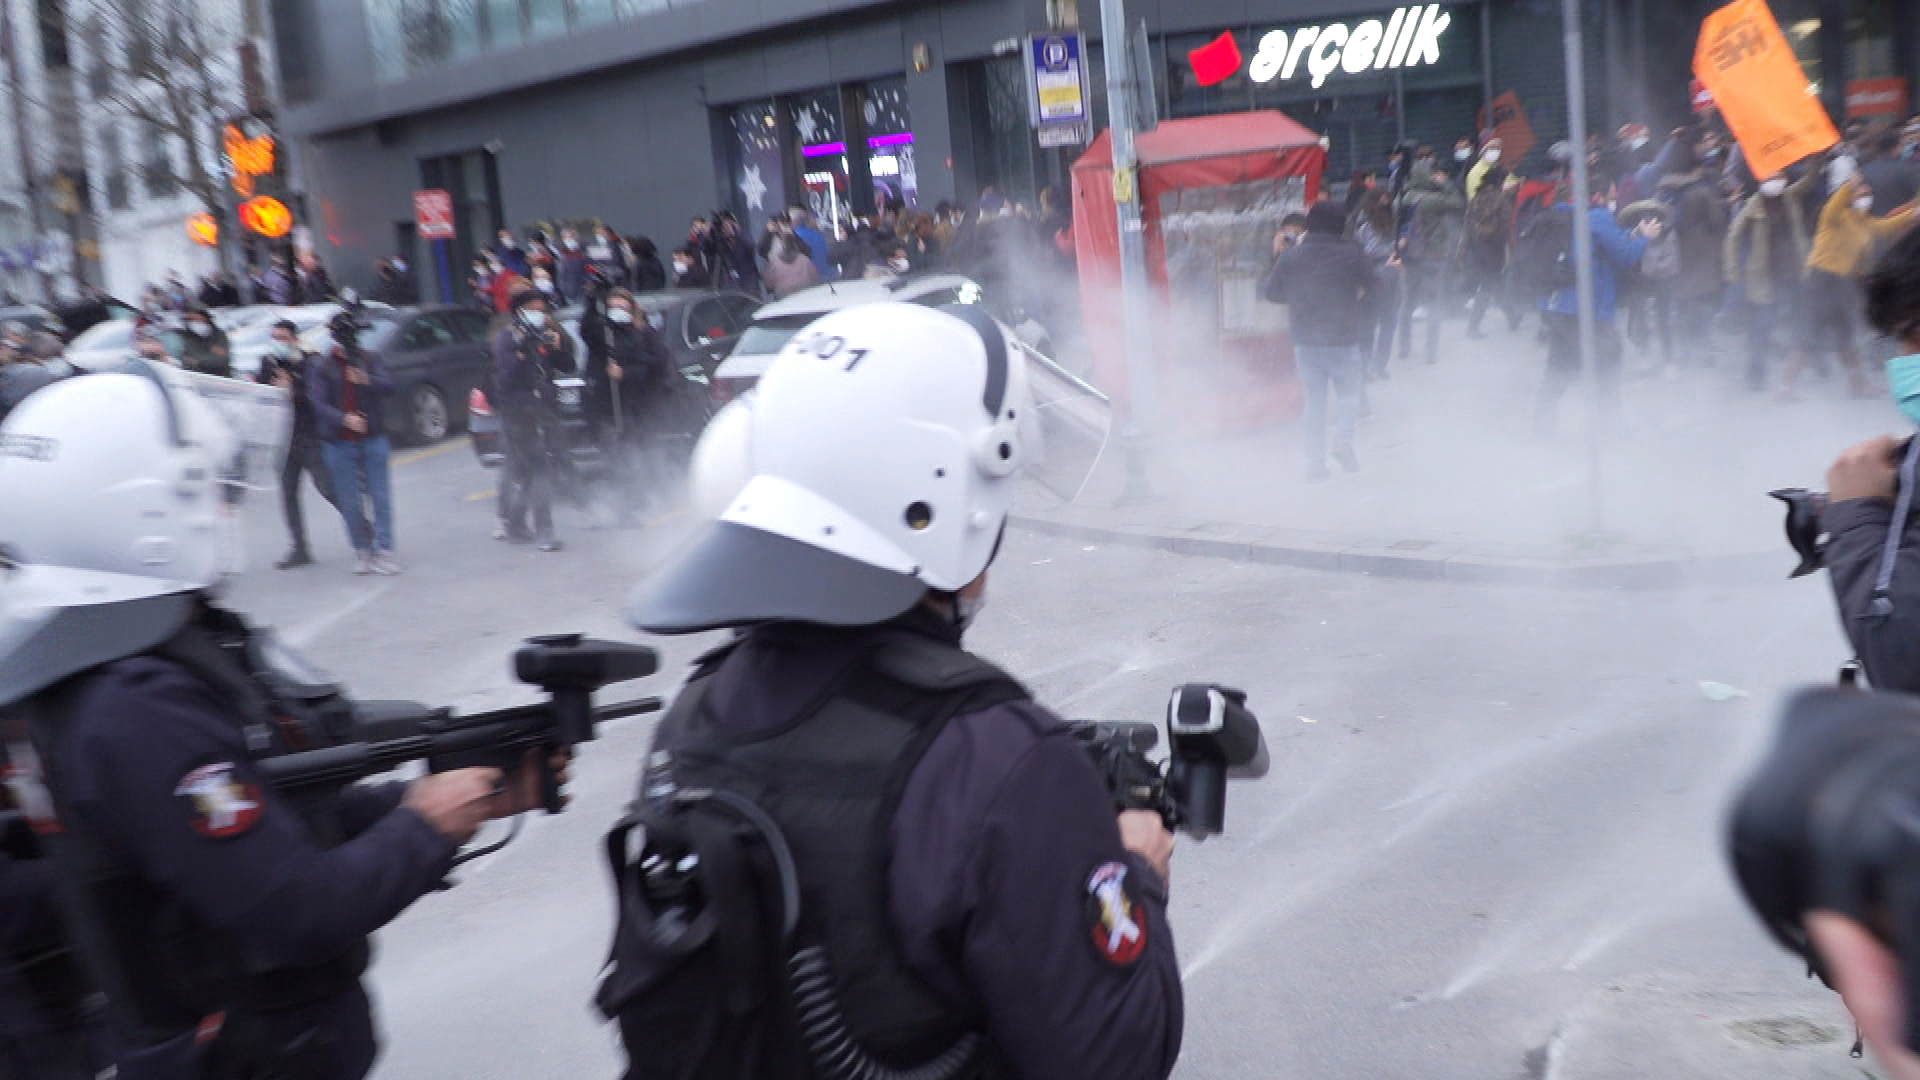 Polizisten lösen Demonstration auf | ARD Istanbul